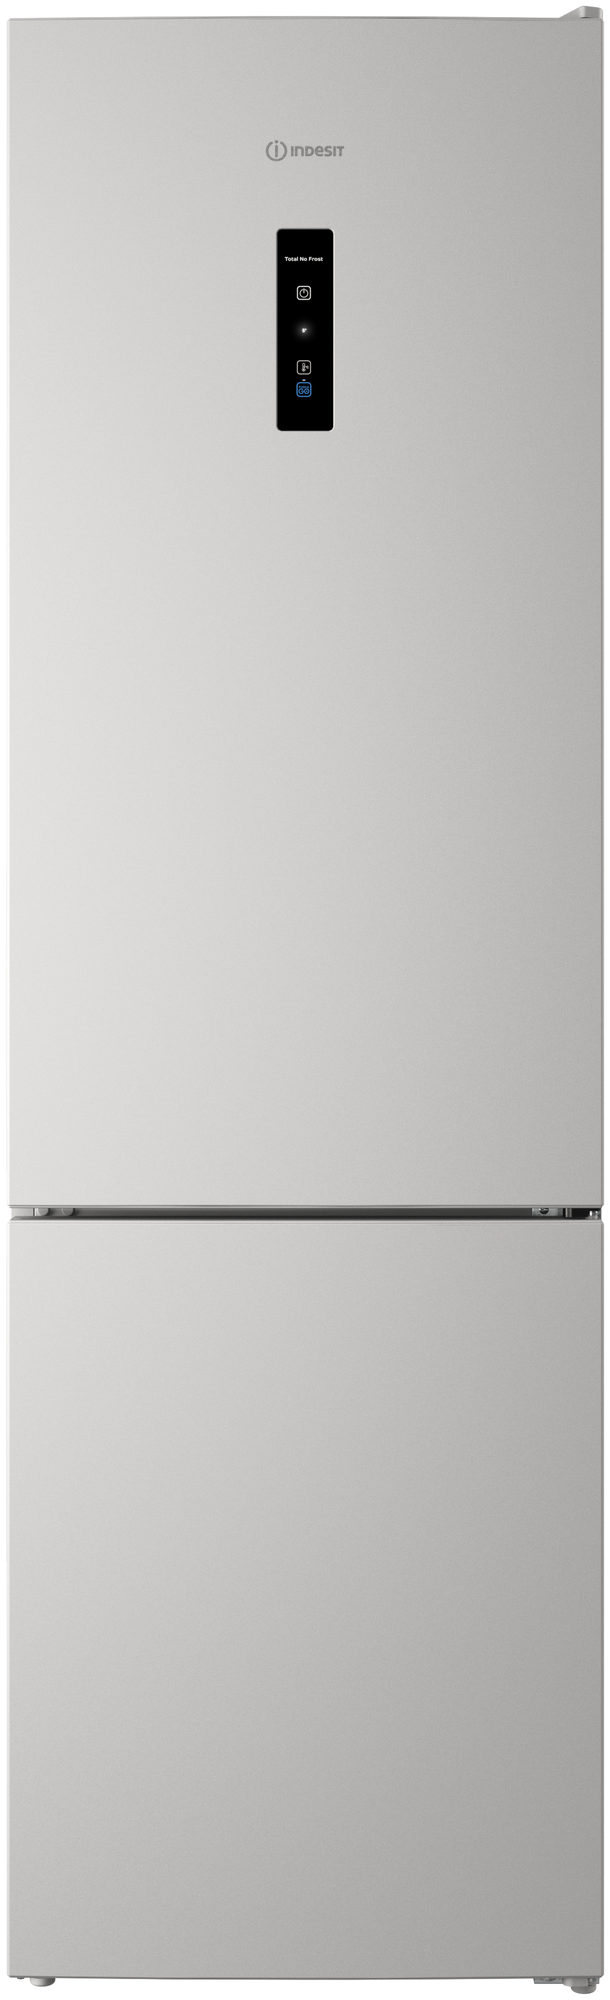 Холодильник Indesit ITR 5200 с органайзером Easy Fit